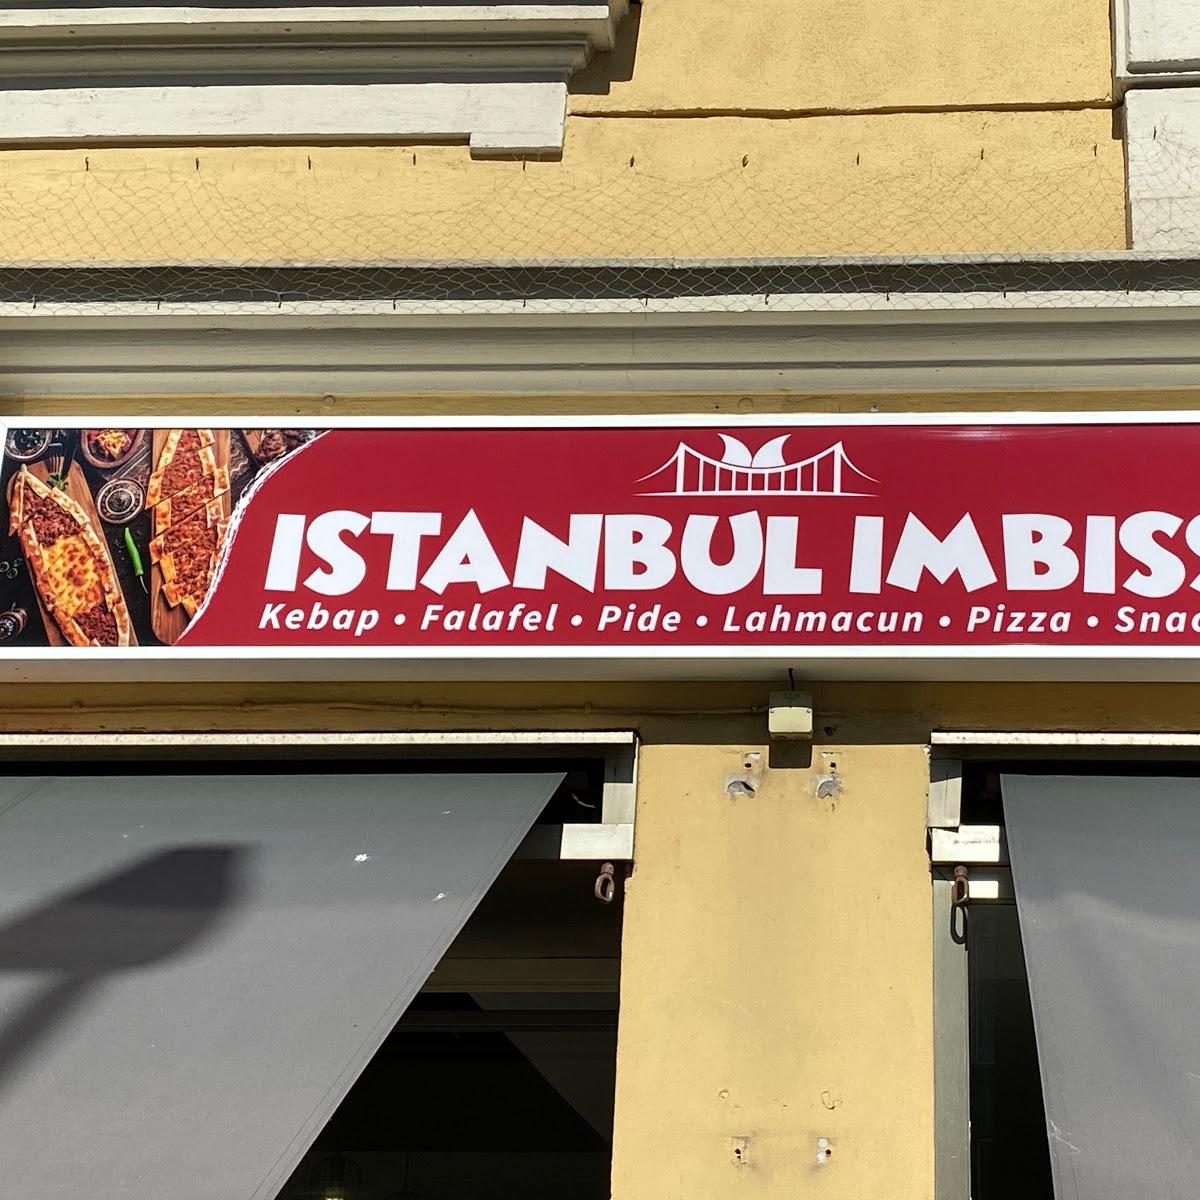 Restaurant "Istanbul Imbiss 2" in München